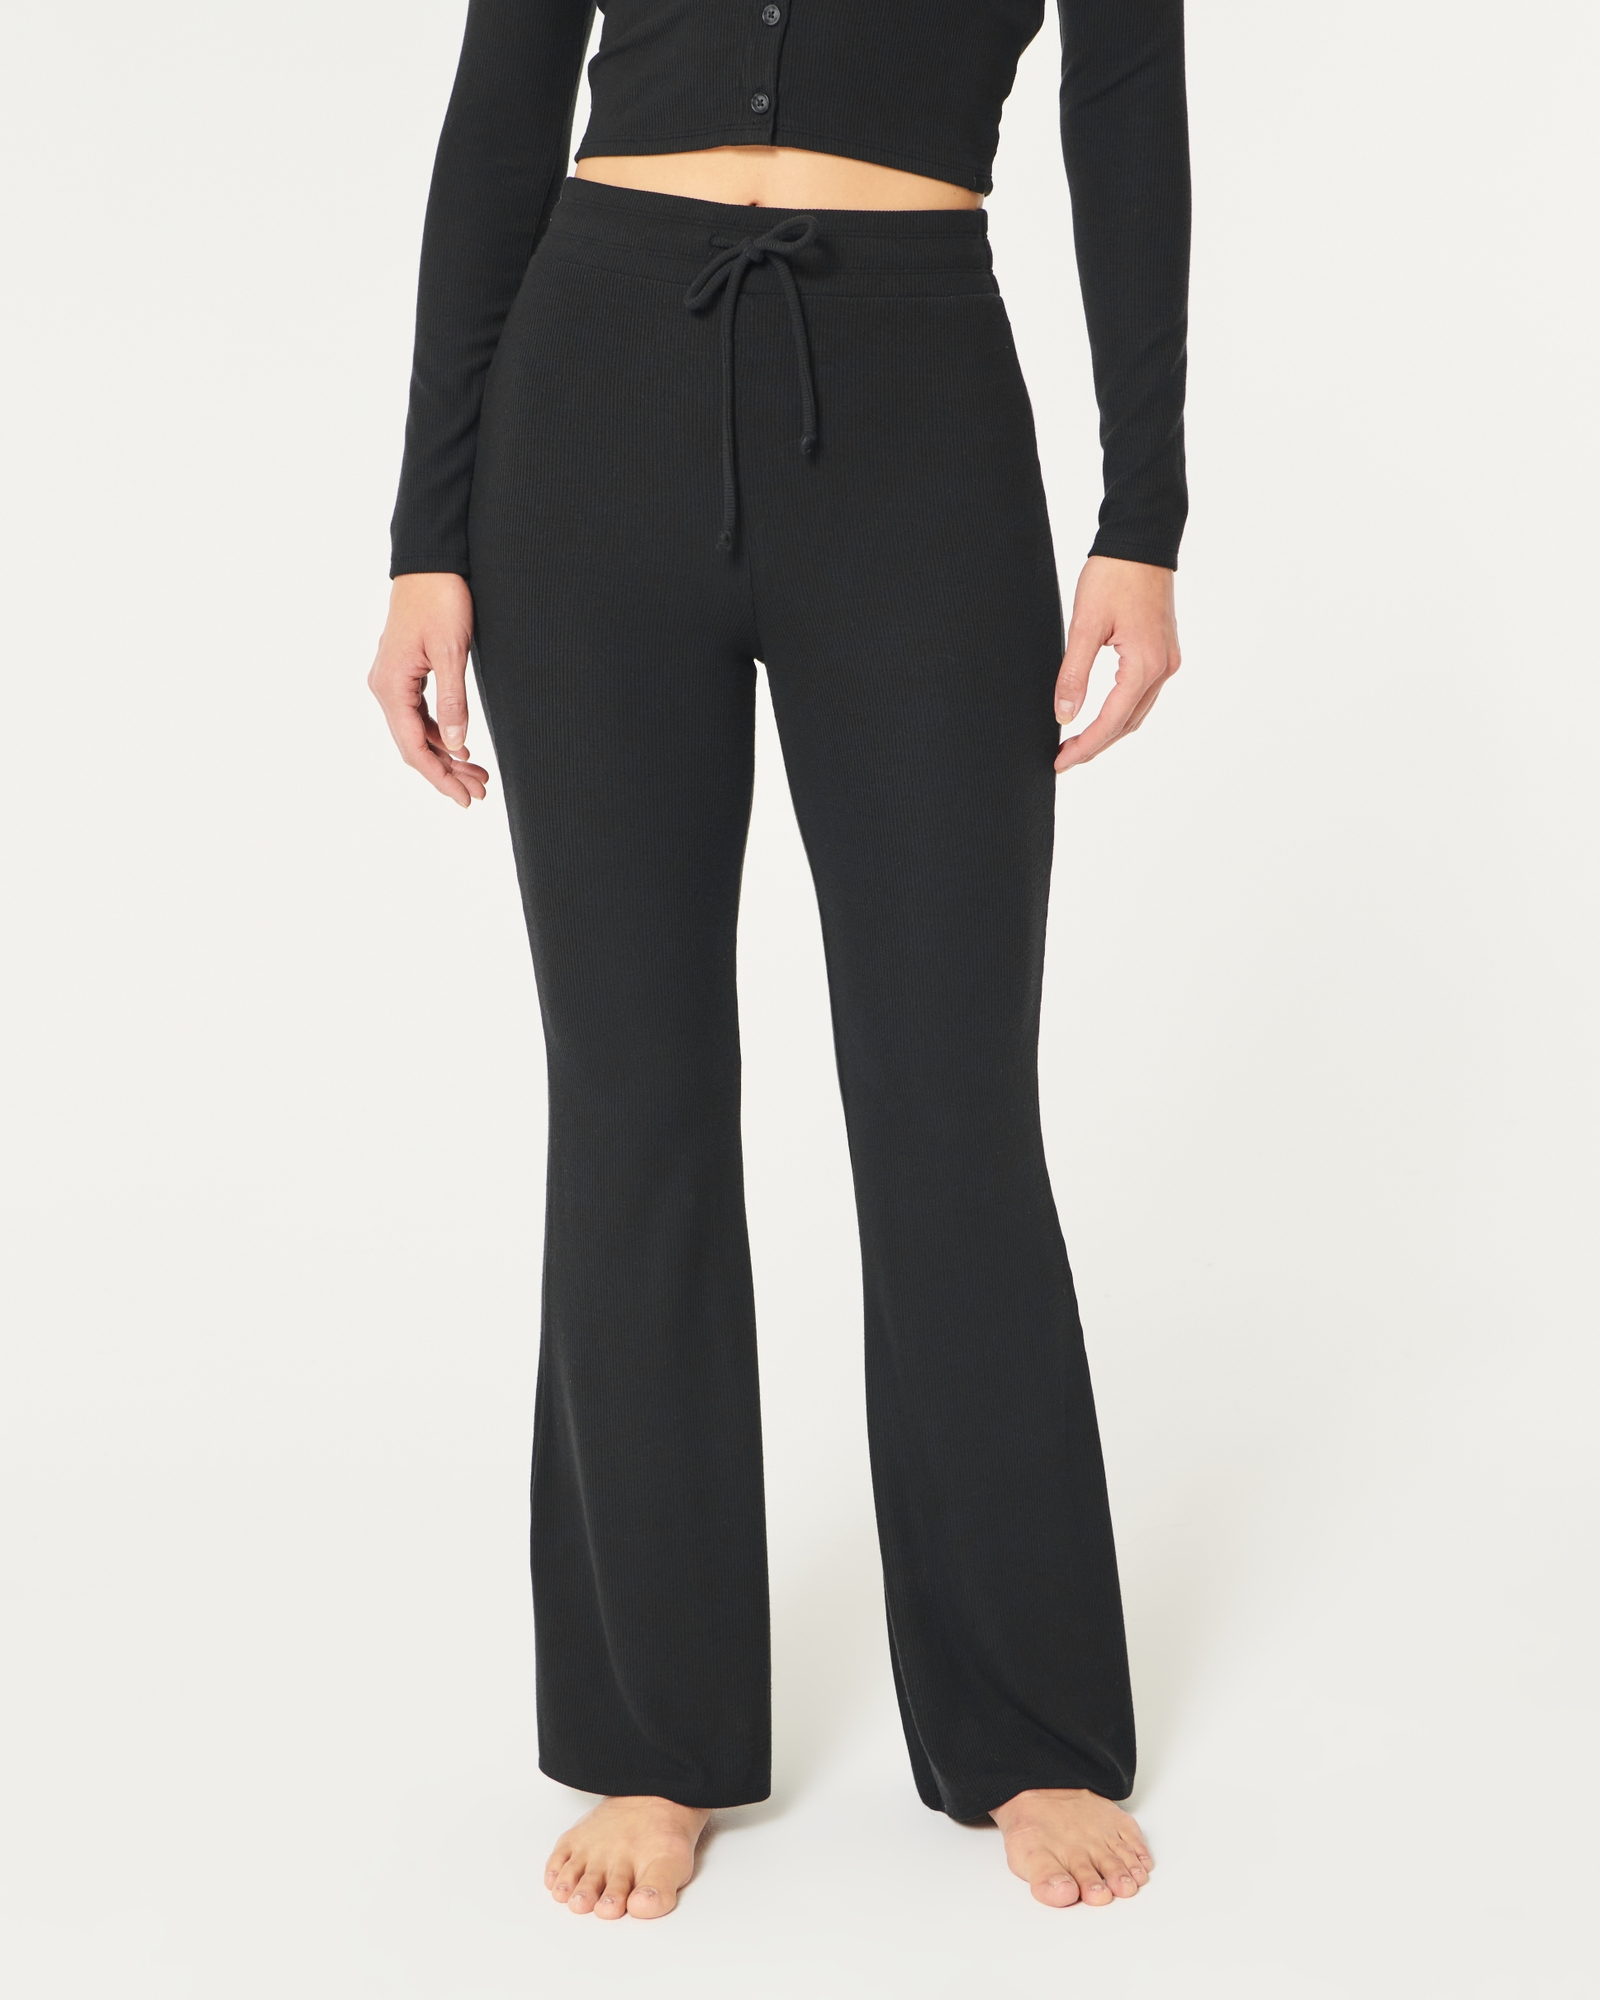 Jersey Flare & Hicks Gilly Women\'s Rib | Women\'s Pants Sleepwear Loungewear